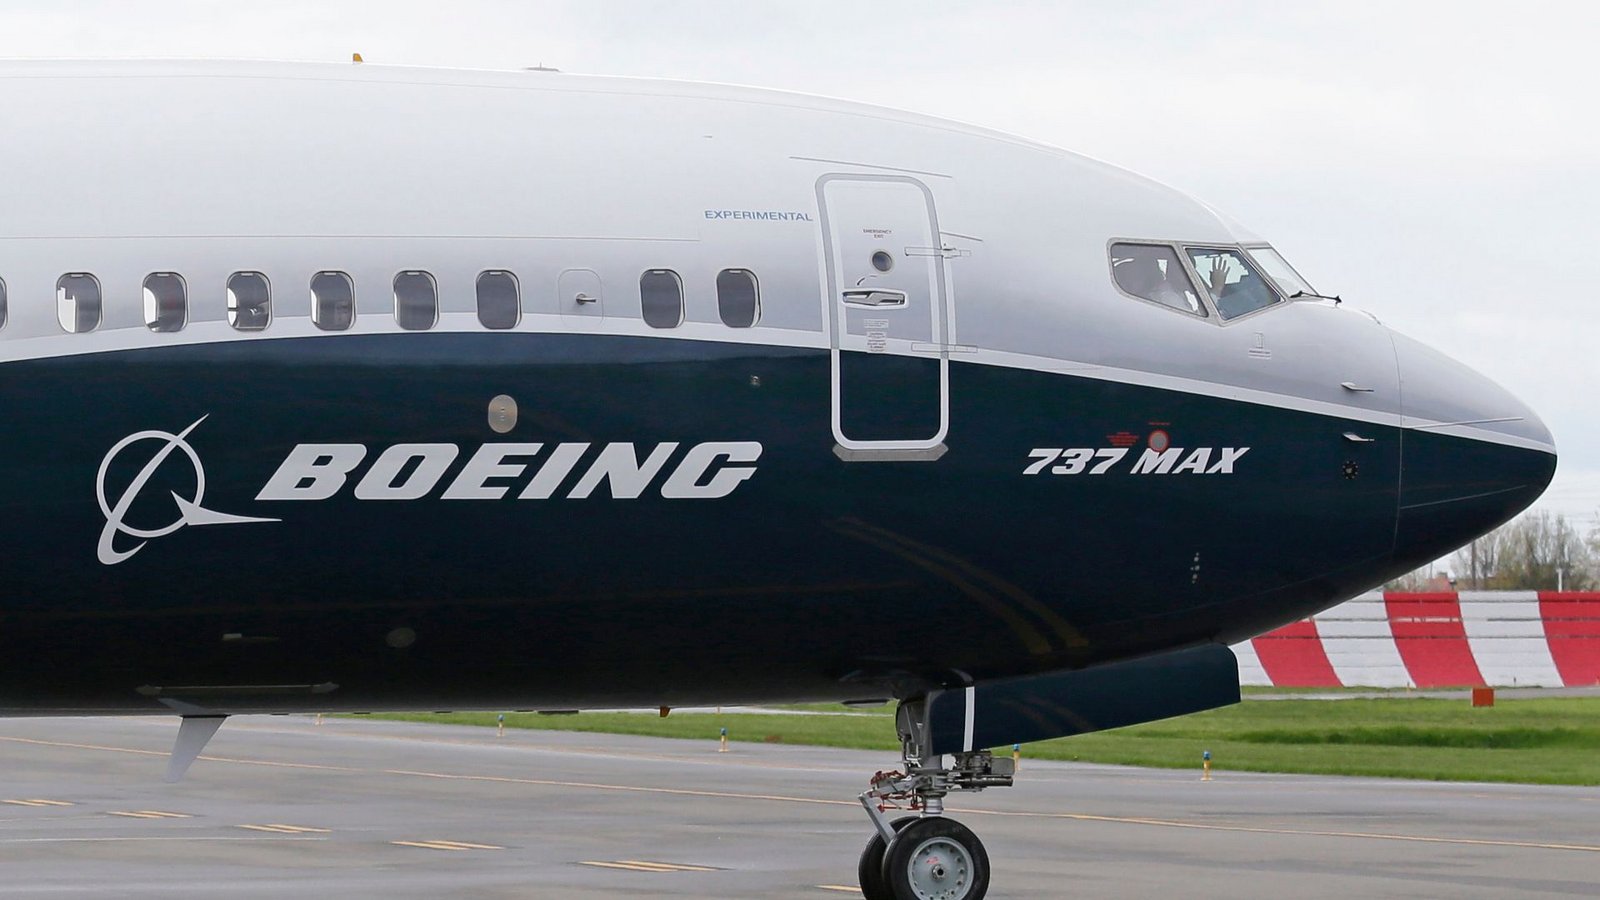 Der dramatische Zwischenfall mit einer Boeing 737-9 Max hat den Flugzeugbauer viel Geld gekostet.Foto: Ted S. Warren/AP/dpa